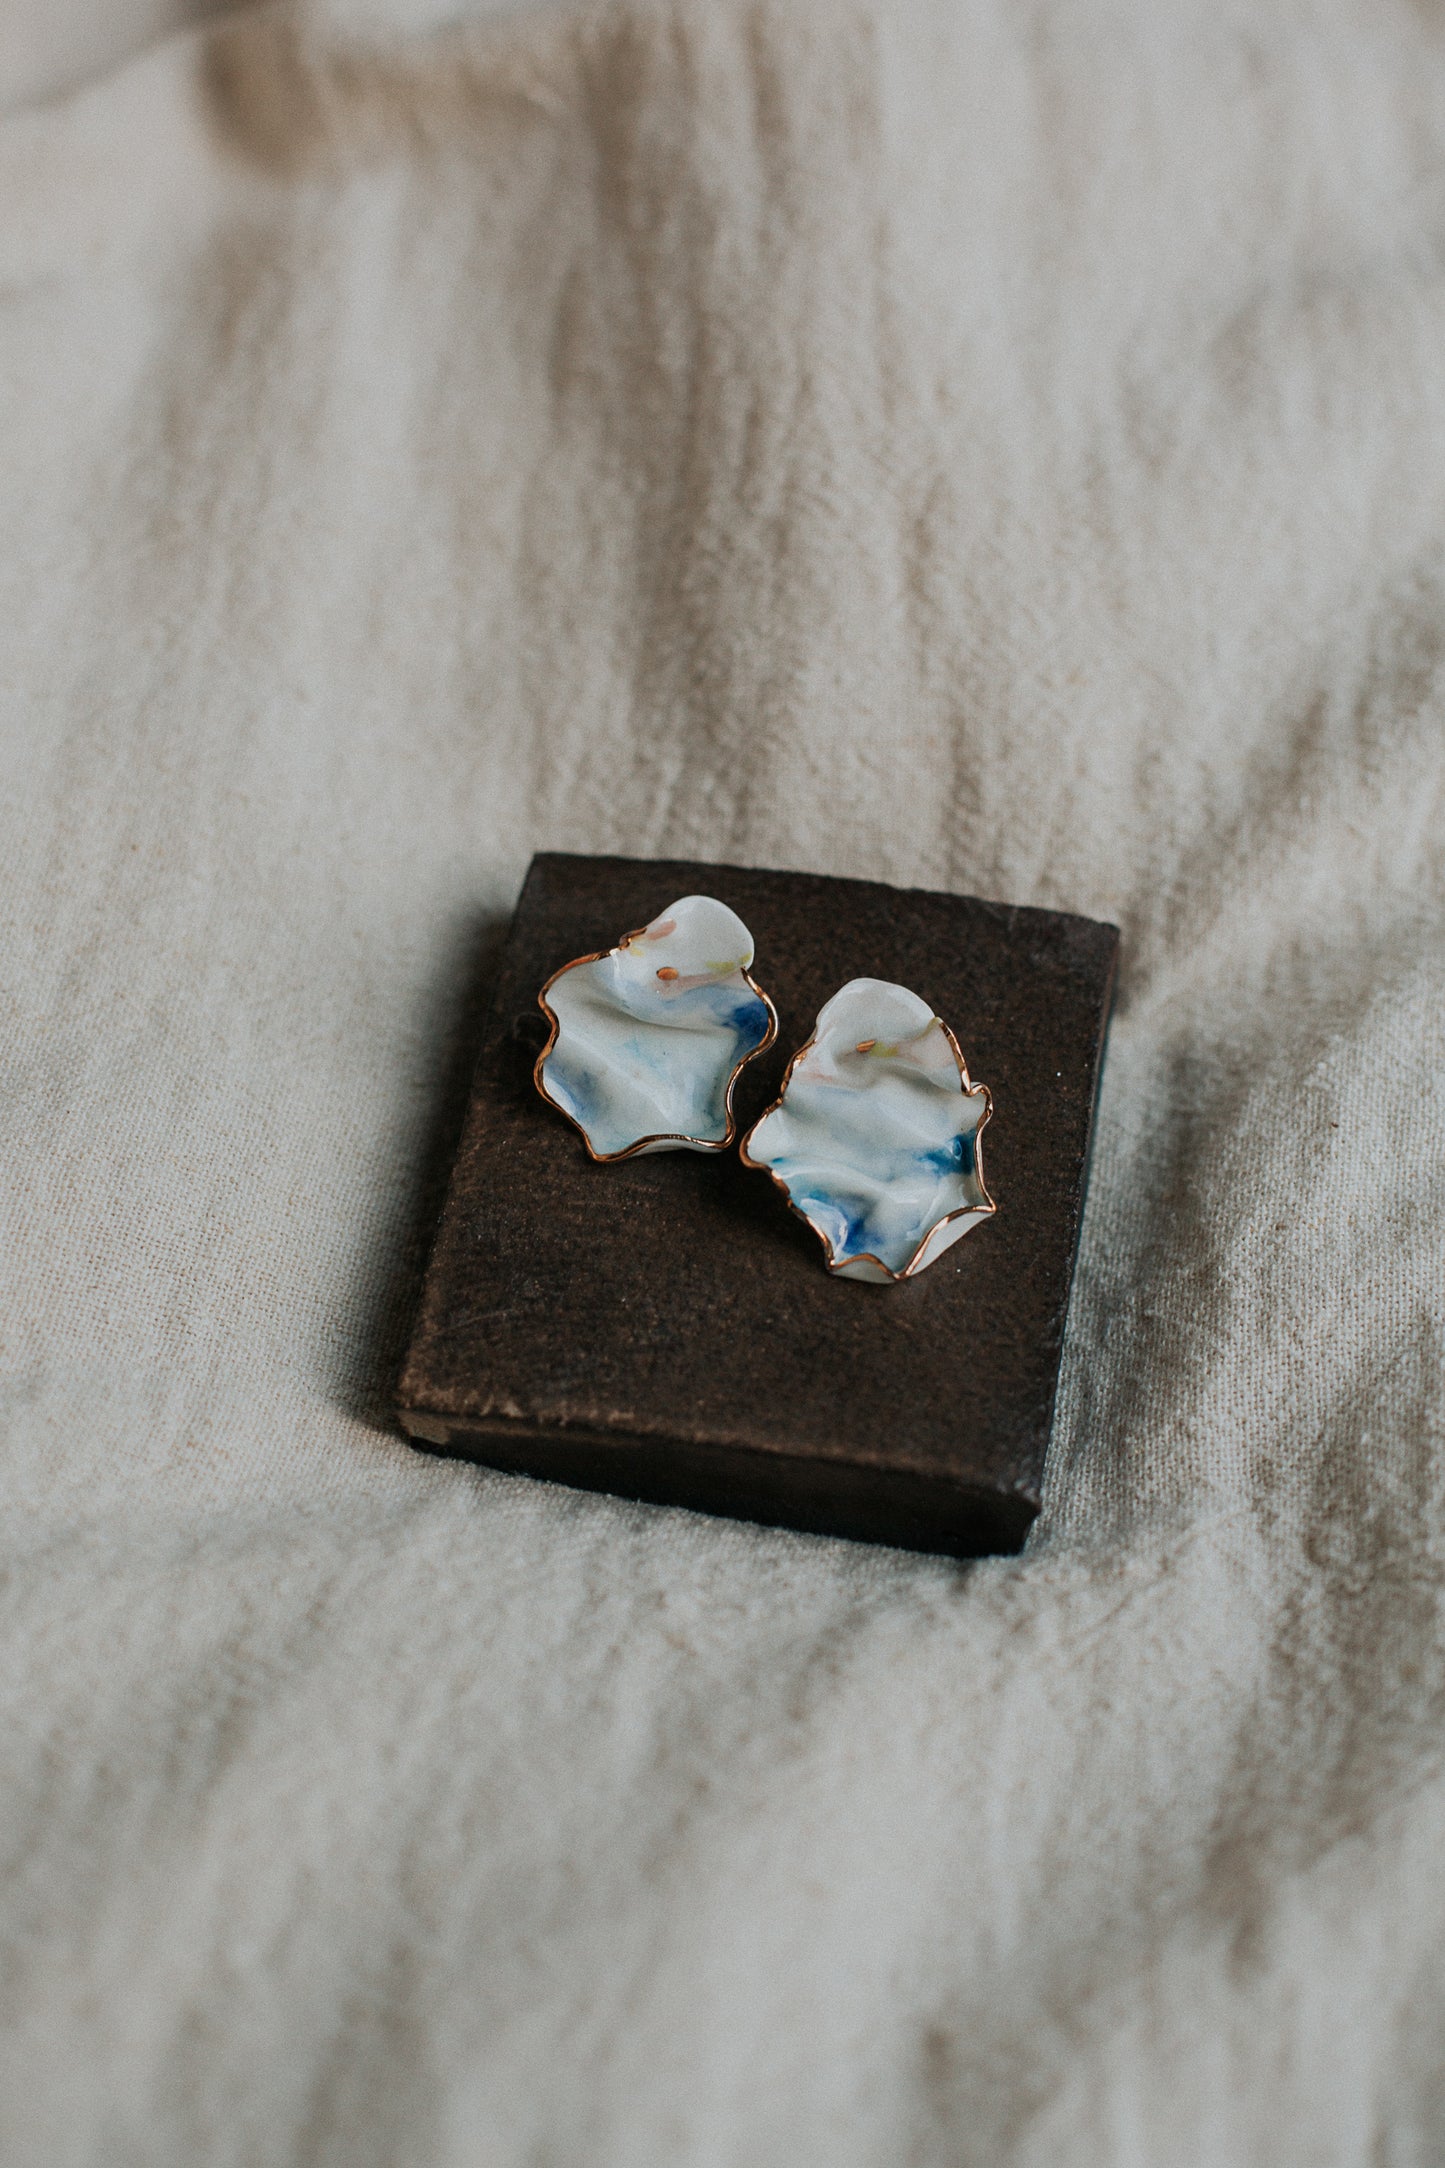 waterfall porcelain earrings